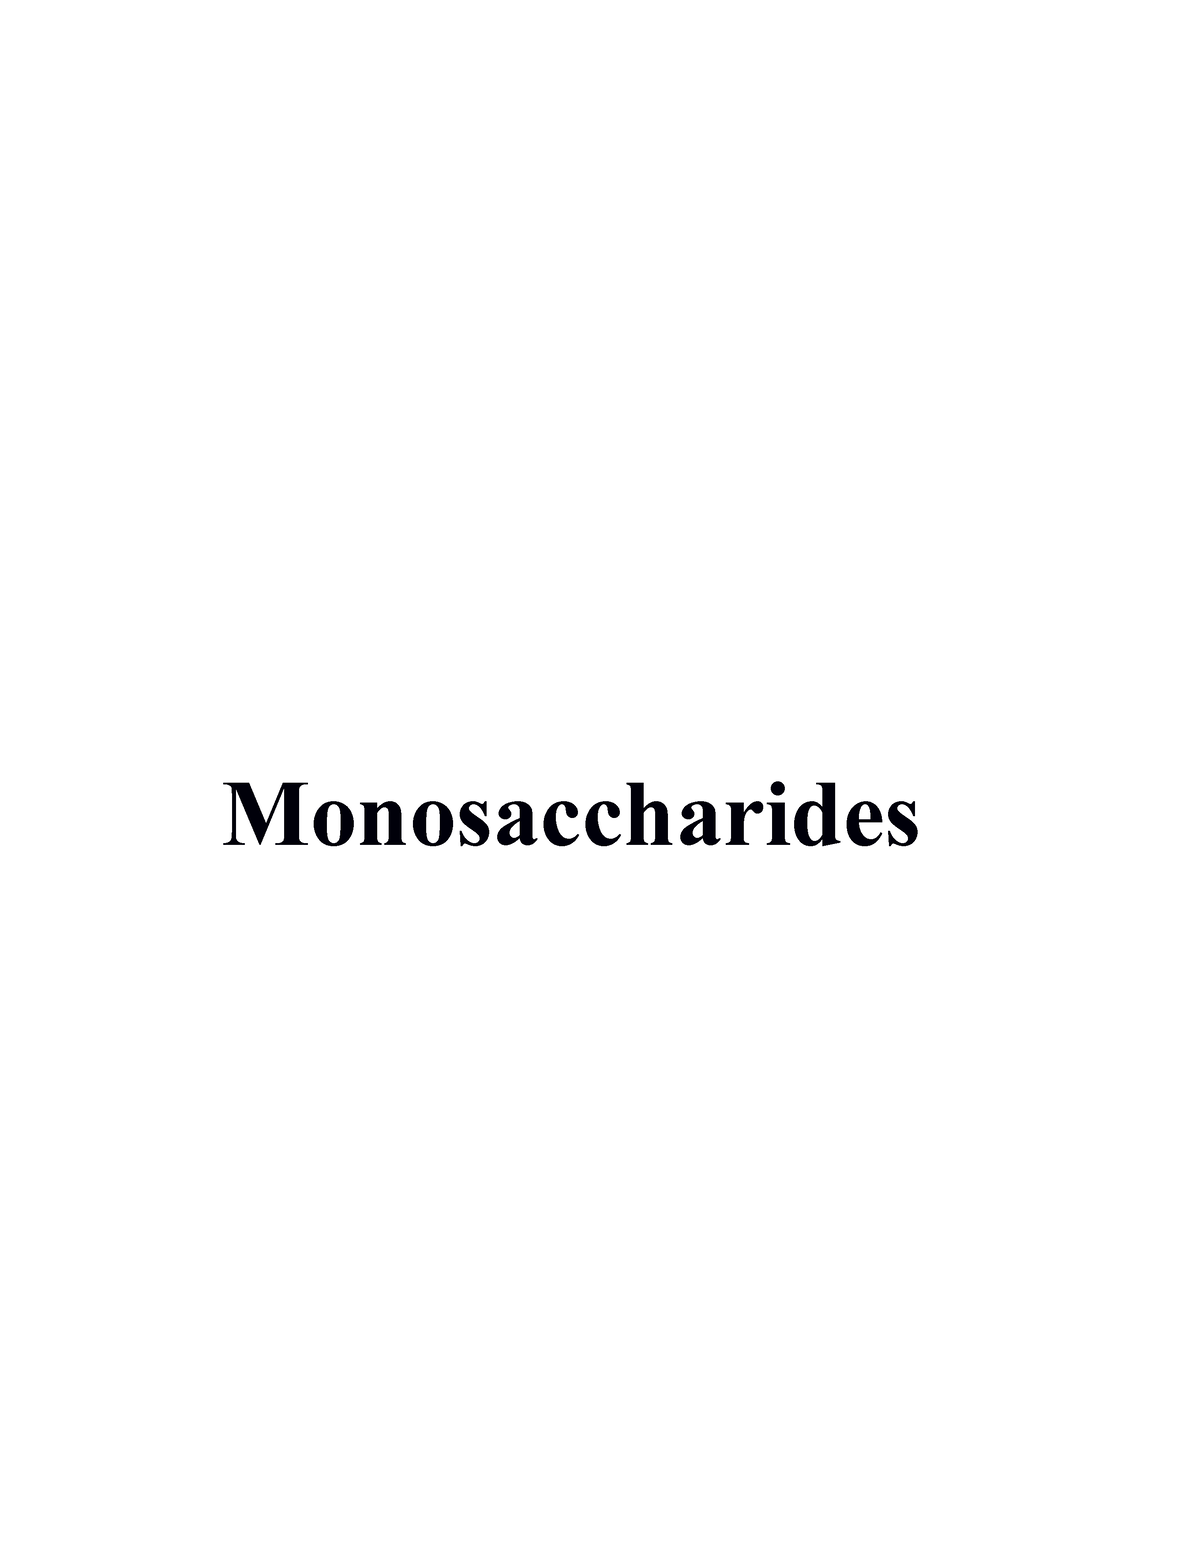 Monosaccharides notes - Monosaccharides Monosaccharides Monosaccharides ...